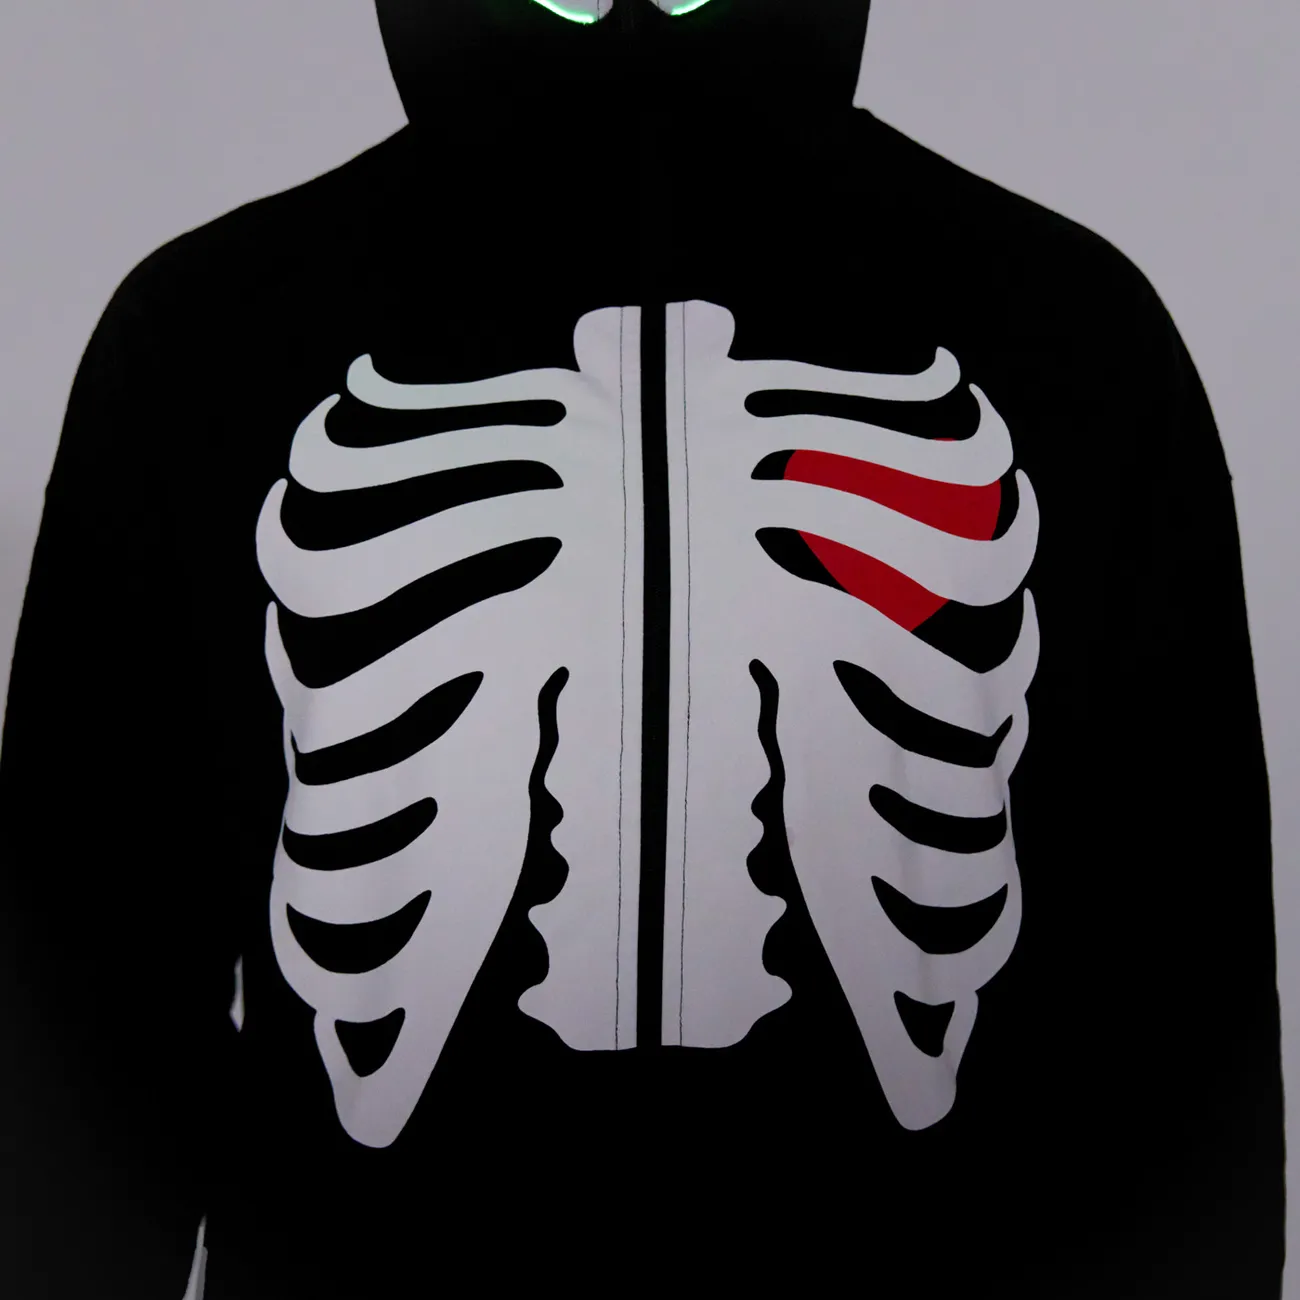 Go-Glow Halloween Illuminating Adult Jacket avec squelette de tête allumée, y compris le contrôleur (batterie intégrée) Noir big image 1